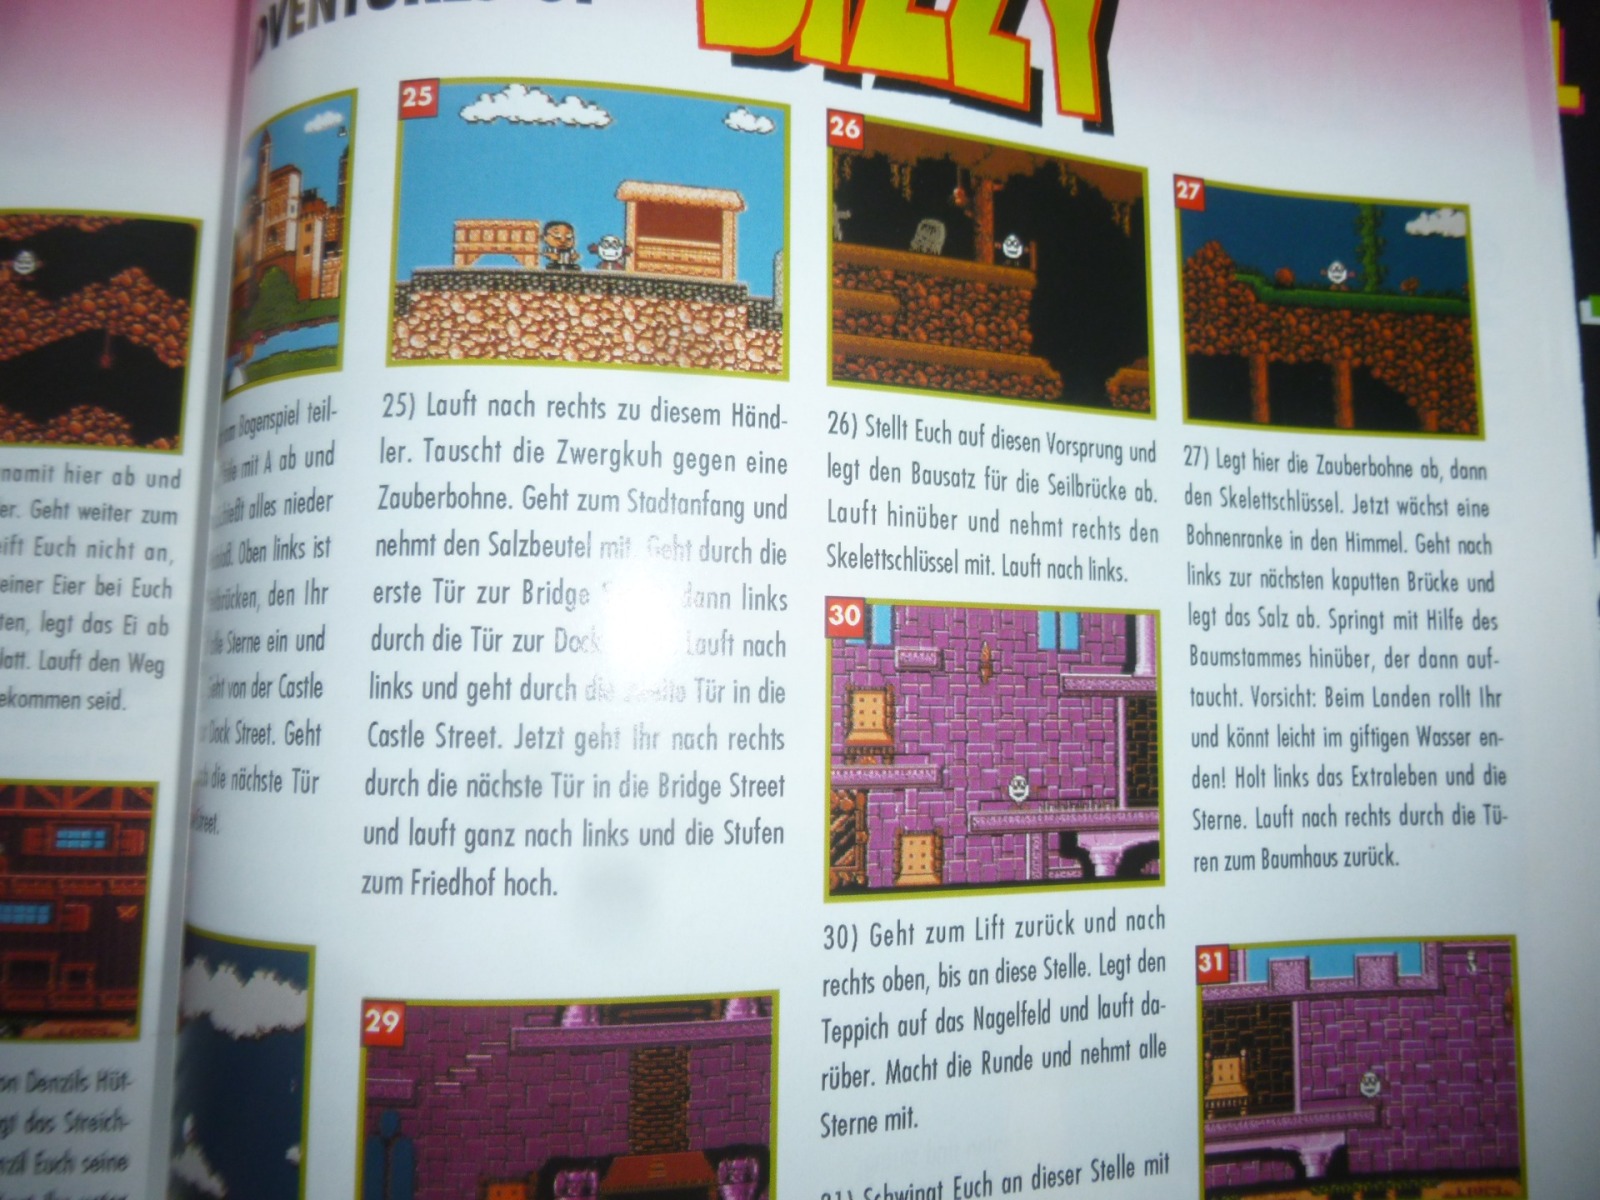 TOTAL Das unabhängige Magazin - 100 Nintendo - Ausgabe 9/93 1993 31